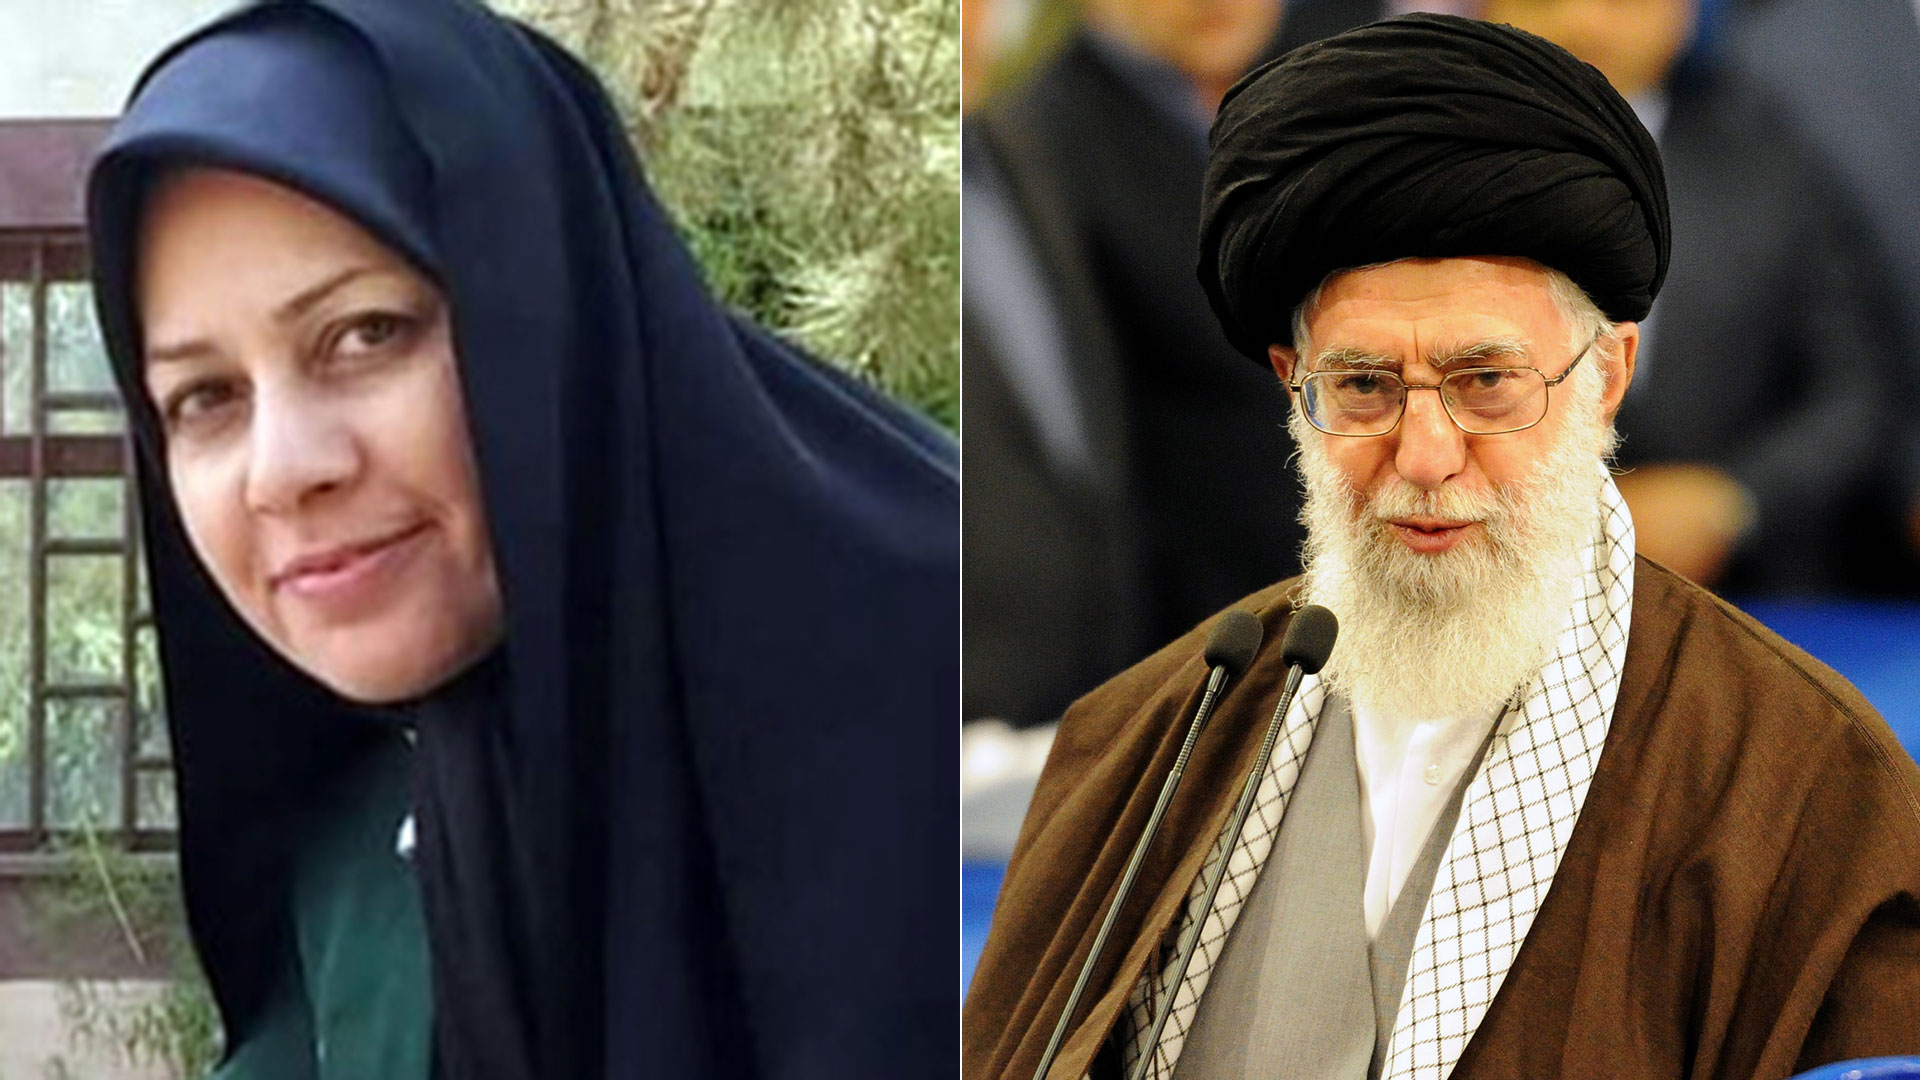 Hermana del líder supremo de Irán solicitó que el régimen sea derrocado: El levantamiento es legítimo y necesario